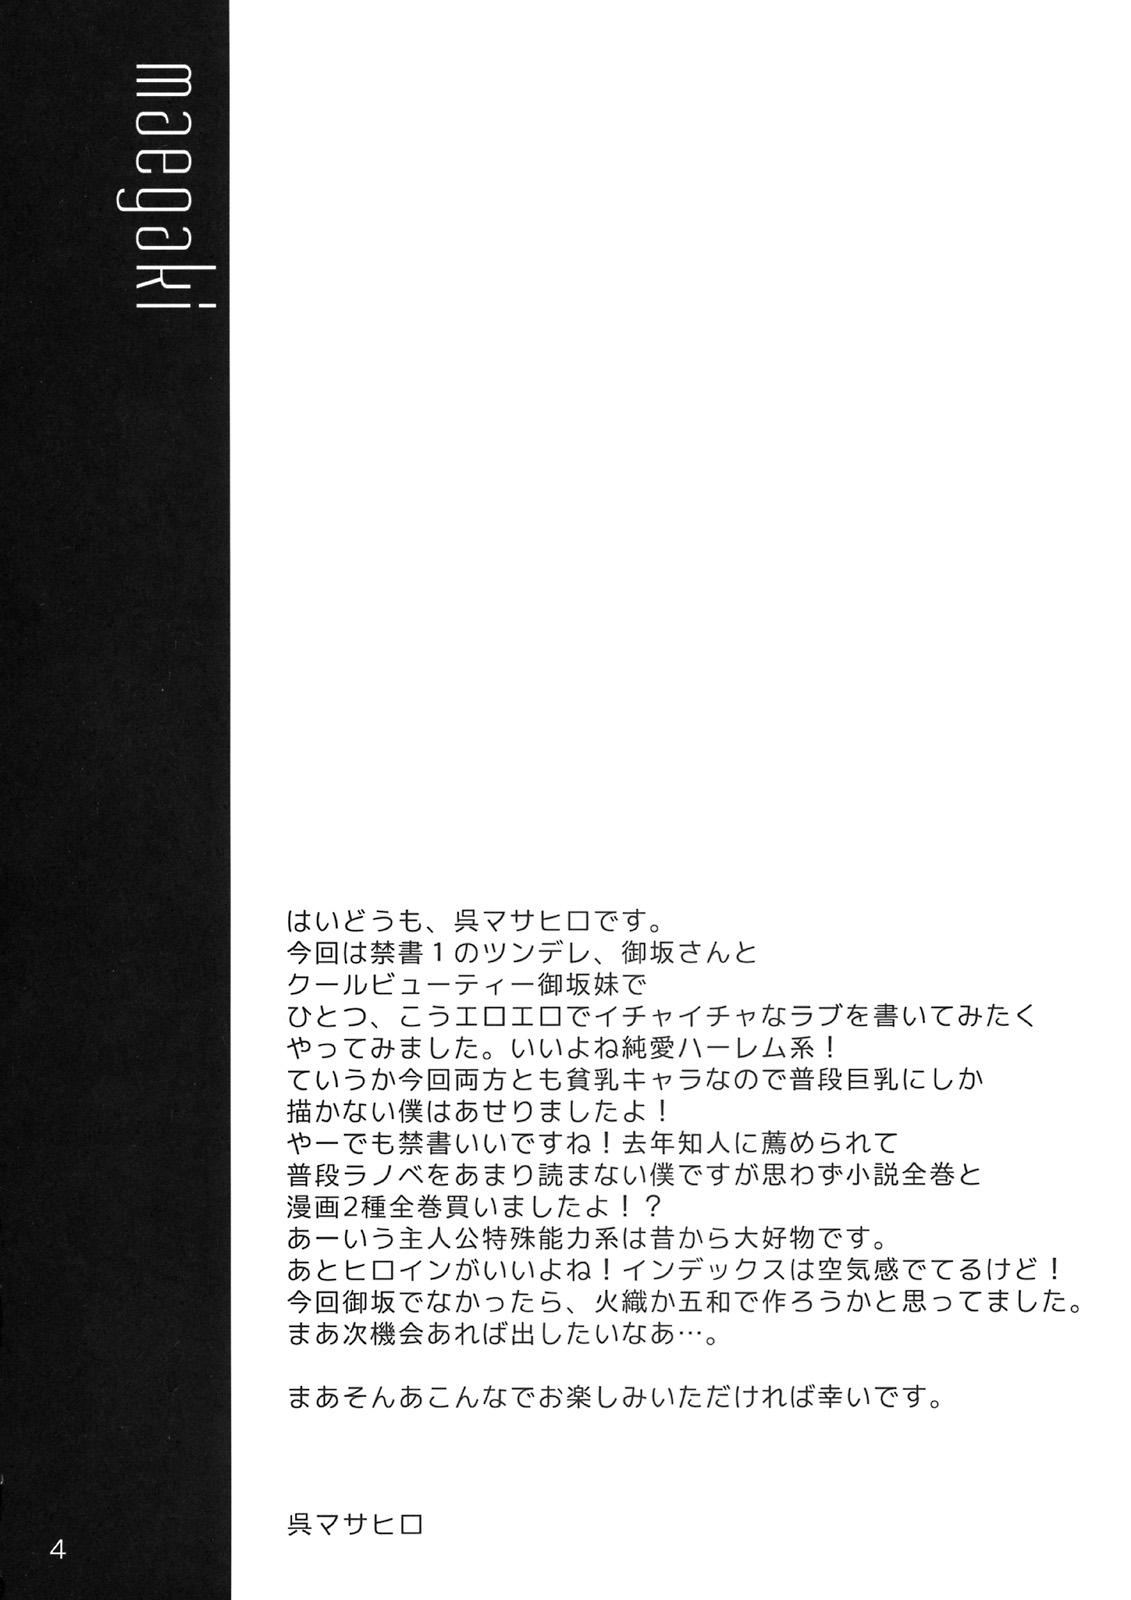 Tetona CL-ic #4 - Toaru majutsu no index Polla - Page 3